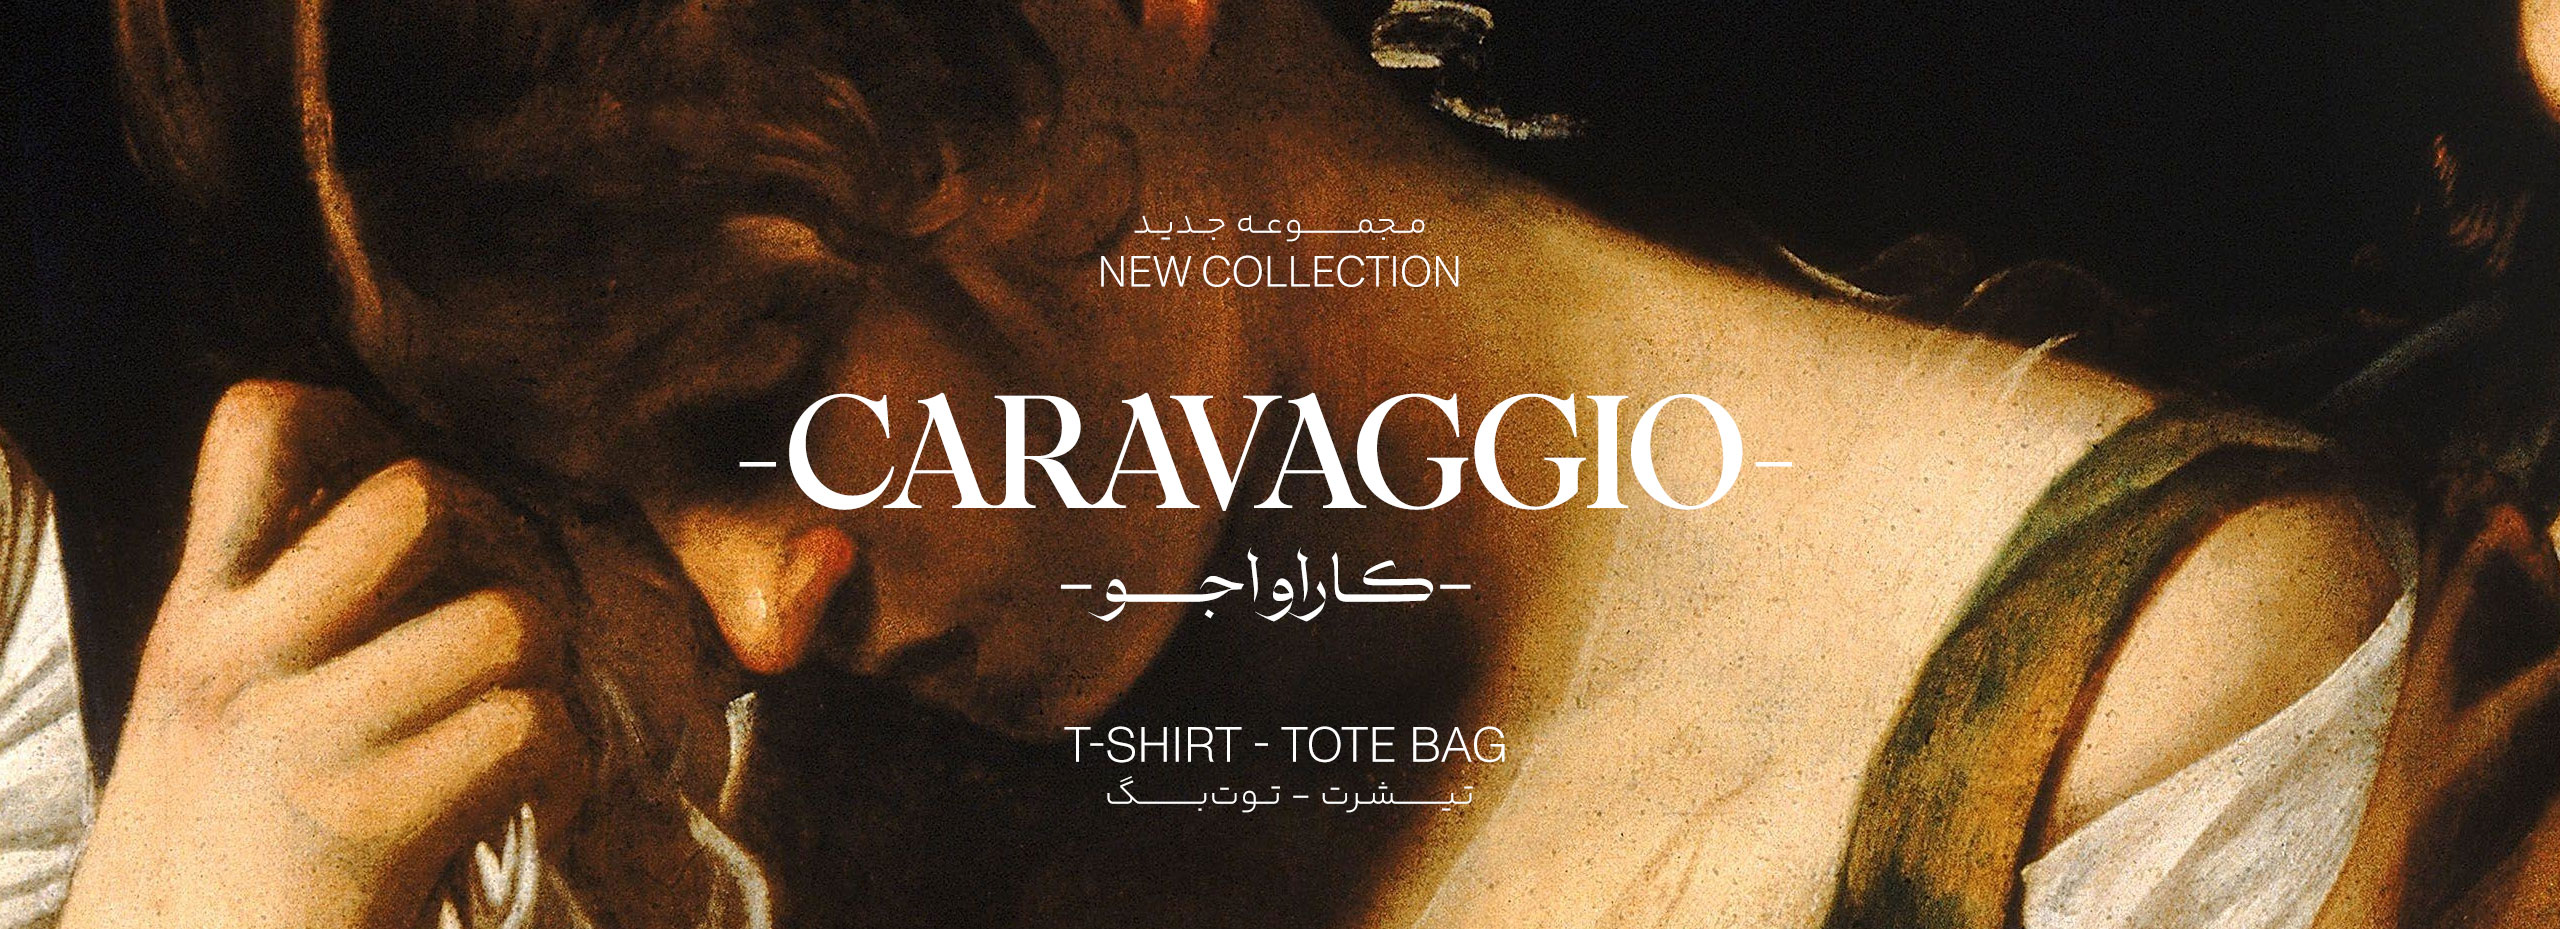 caravaggio-banner